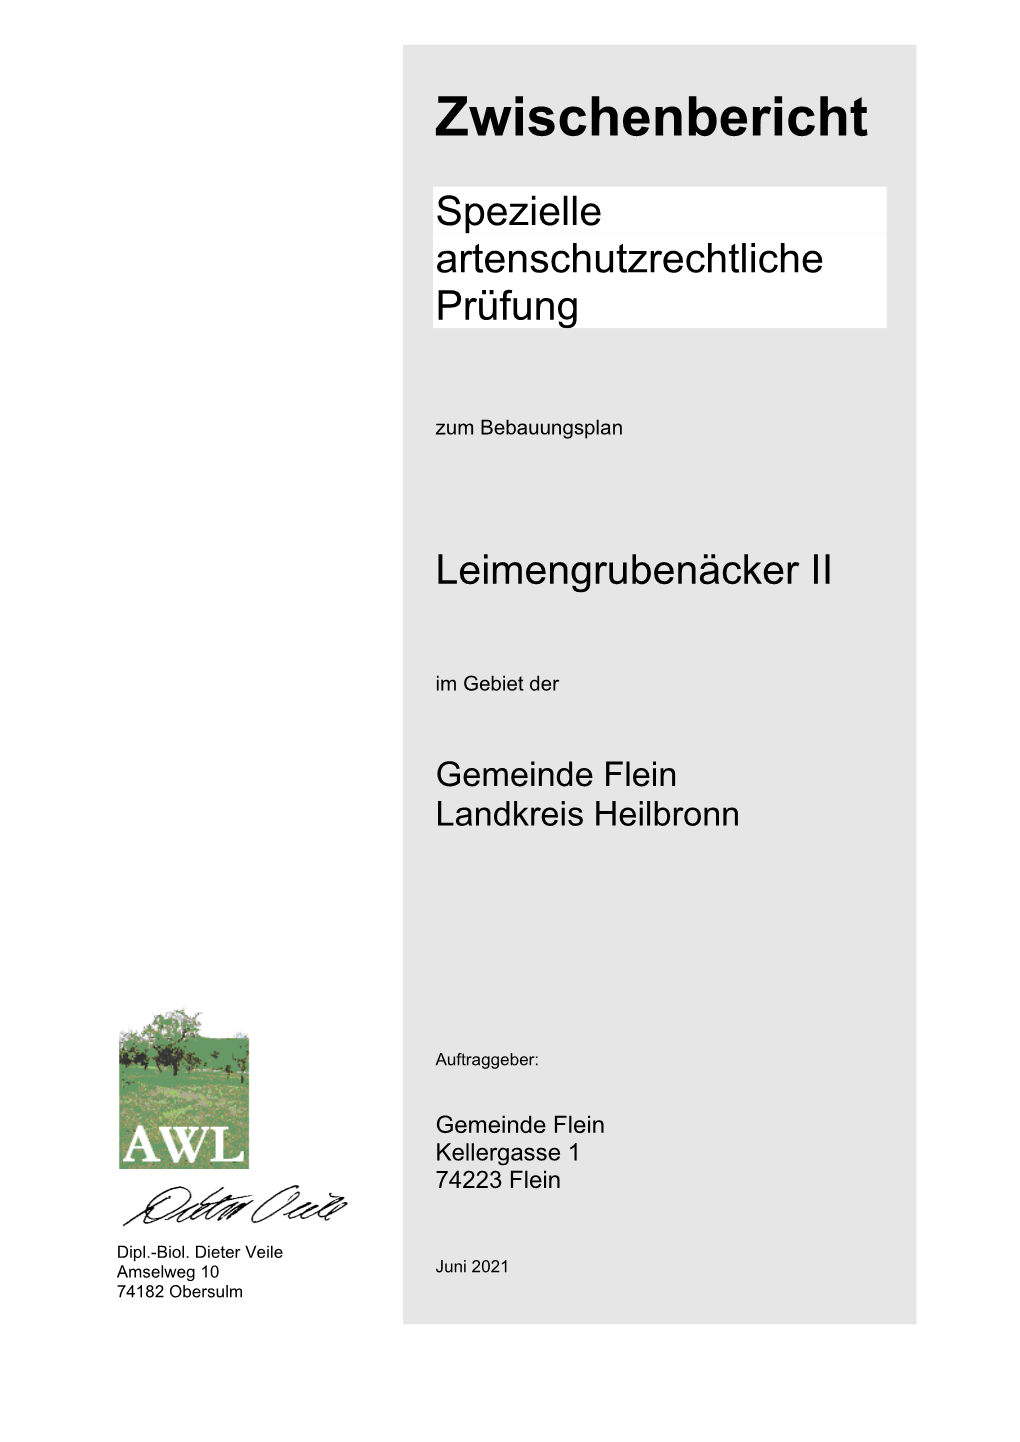 Artenschutzrechtliche Prüfung Amselweg 10 Zum Bebauungsplan Leimengrubenäcker II 74182 Obersulm Gemeinde Flein, Landkreis Heilbronn Juni 2021